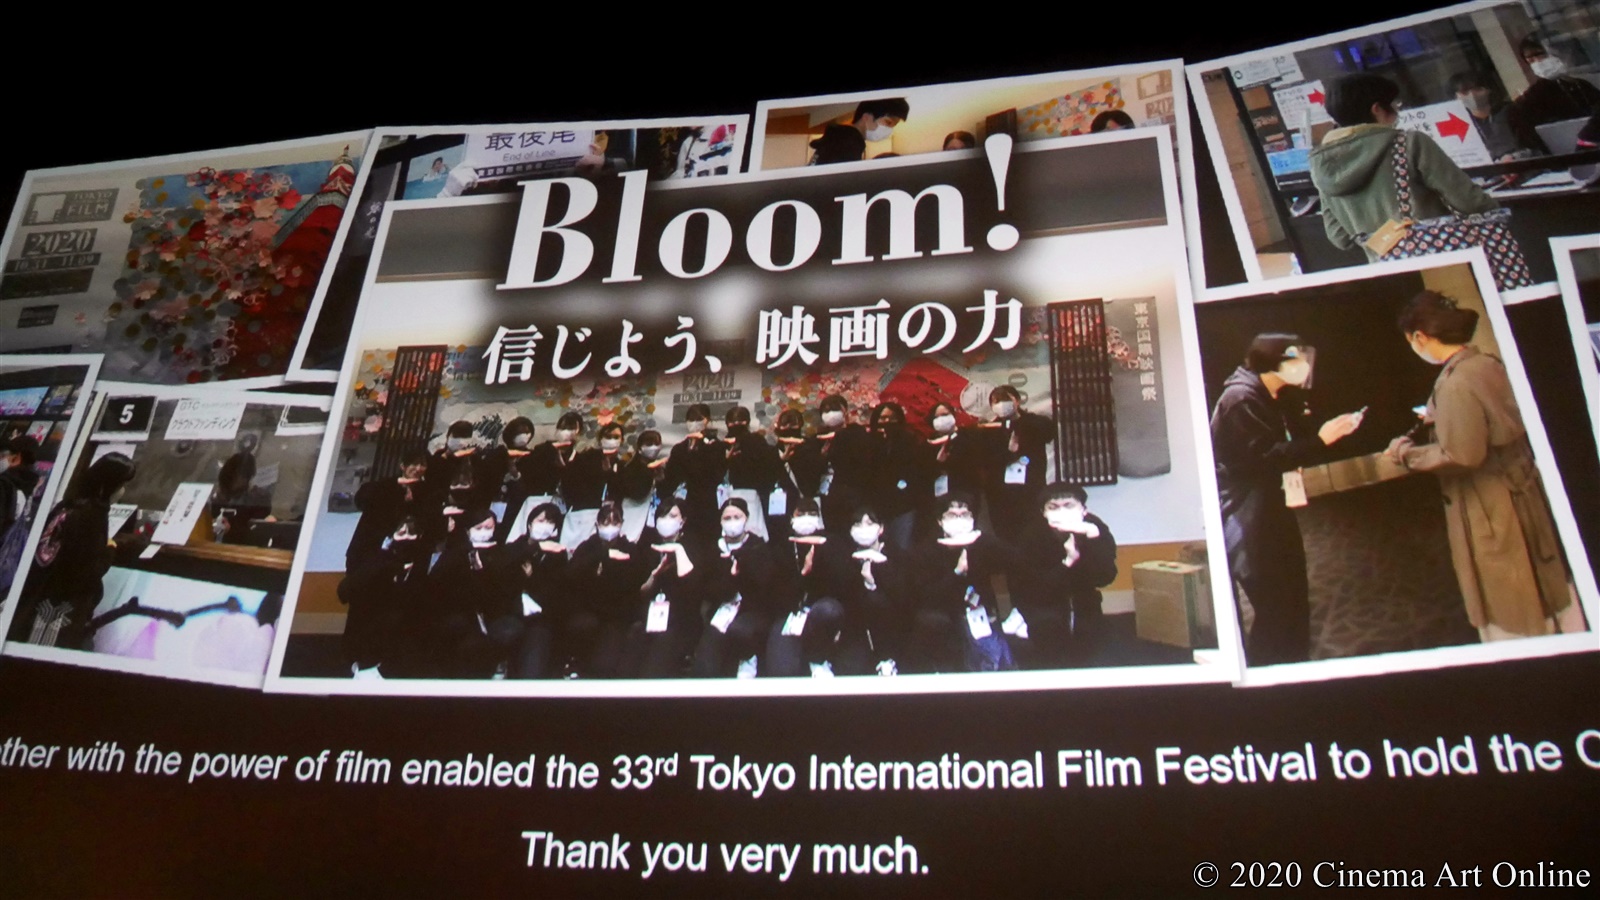 【写真】第33回 東京国際映画祭(TIFF) クロージングセレモニー (Bloom! 信じよう、映画の力)